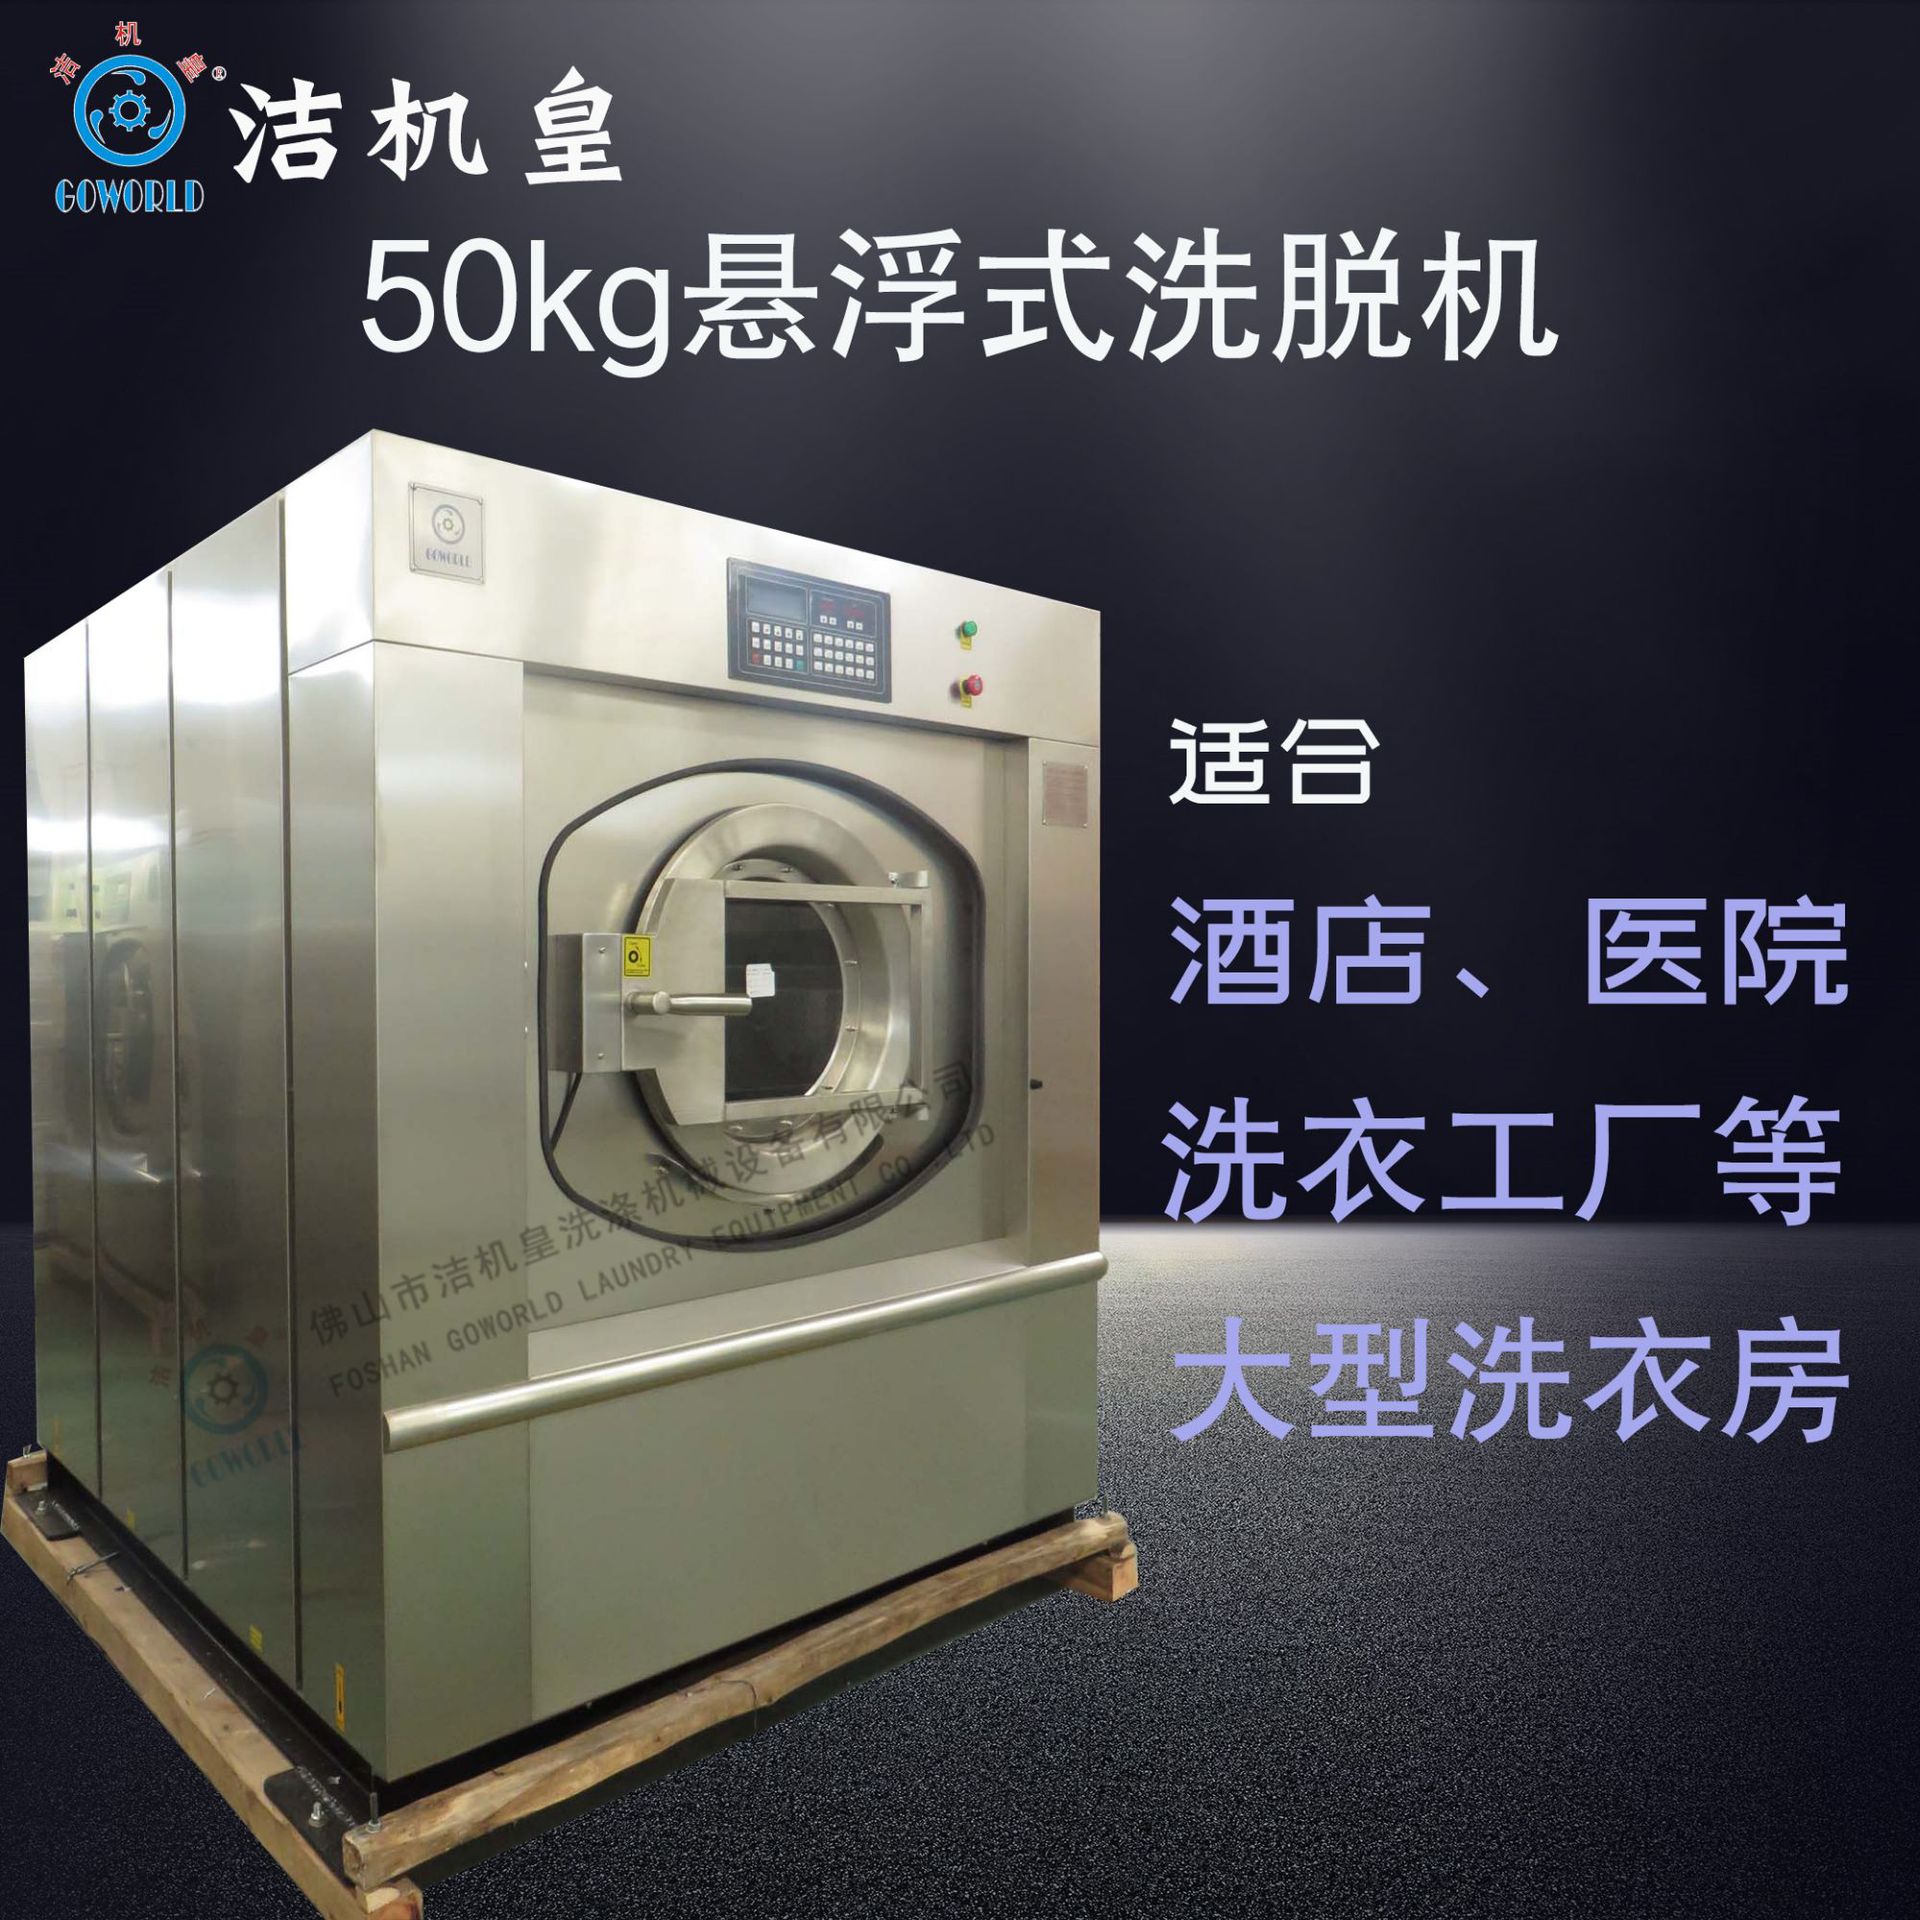 50公斤全自动悬浮式洗衣机 大型洗衣房使用洗衣机